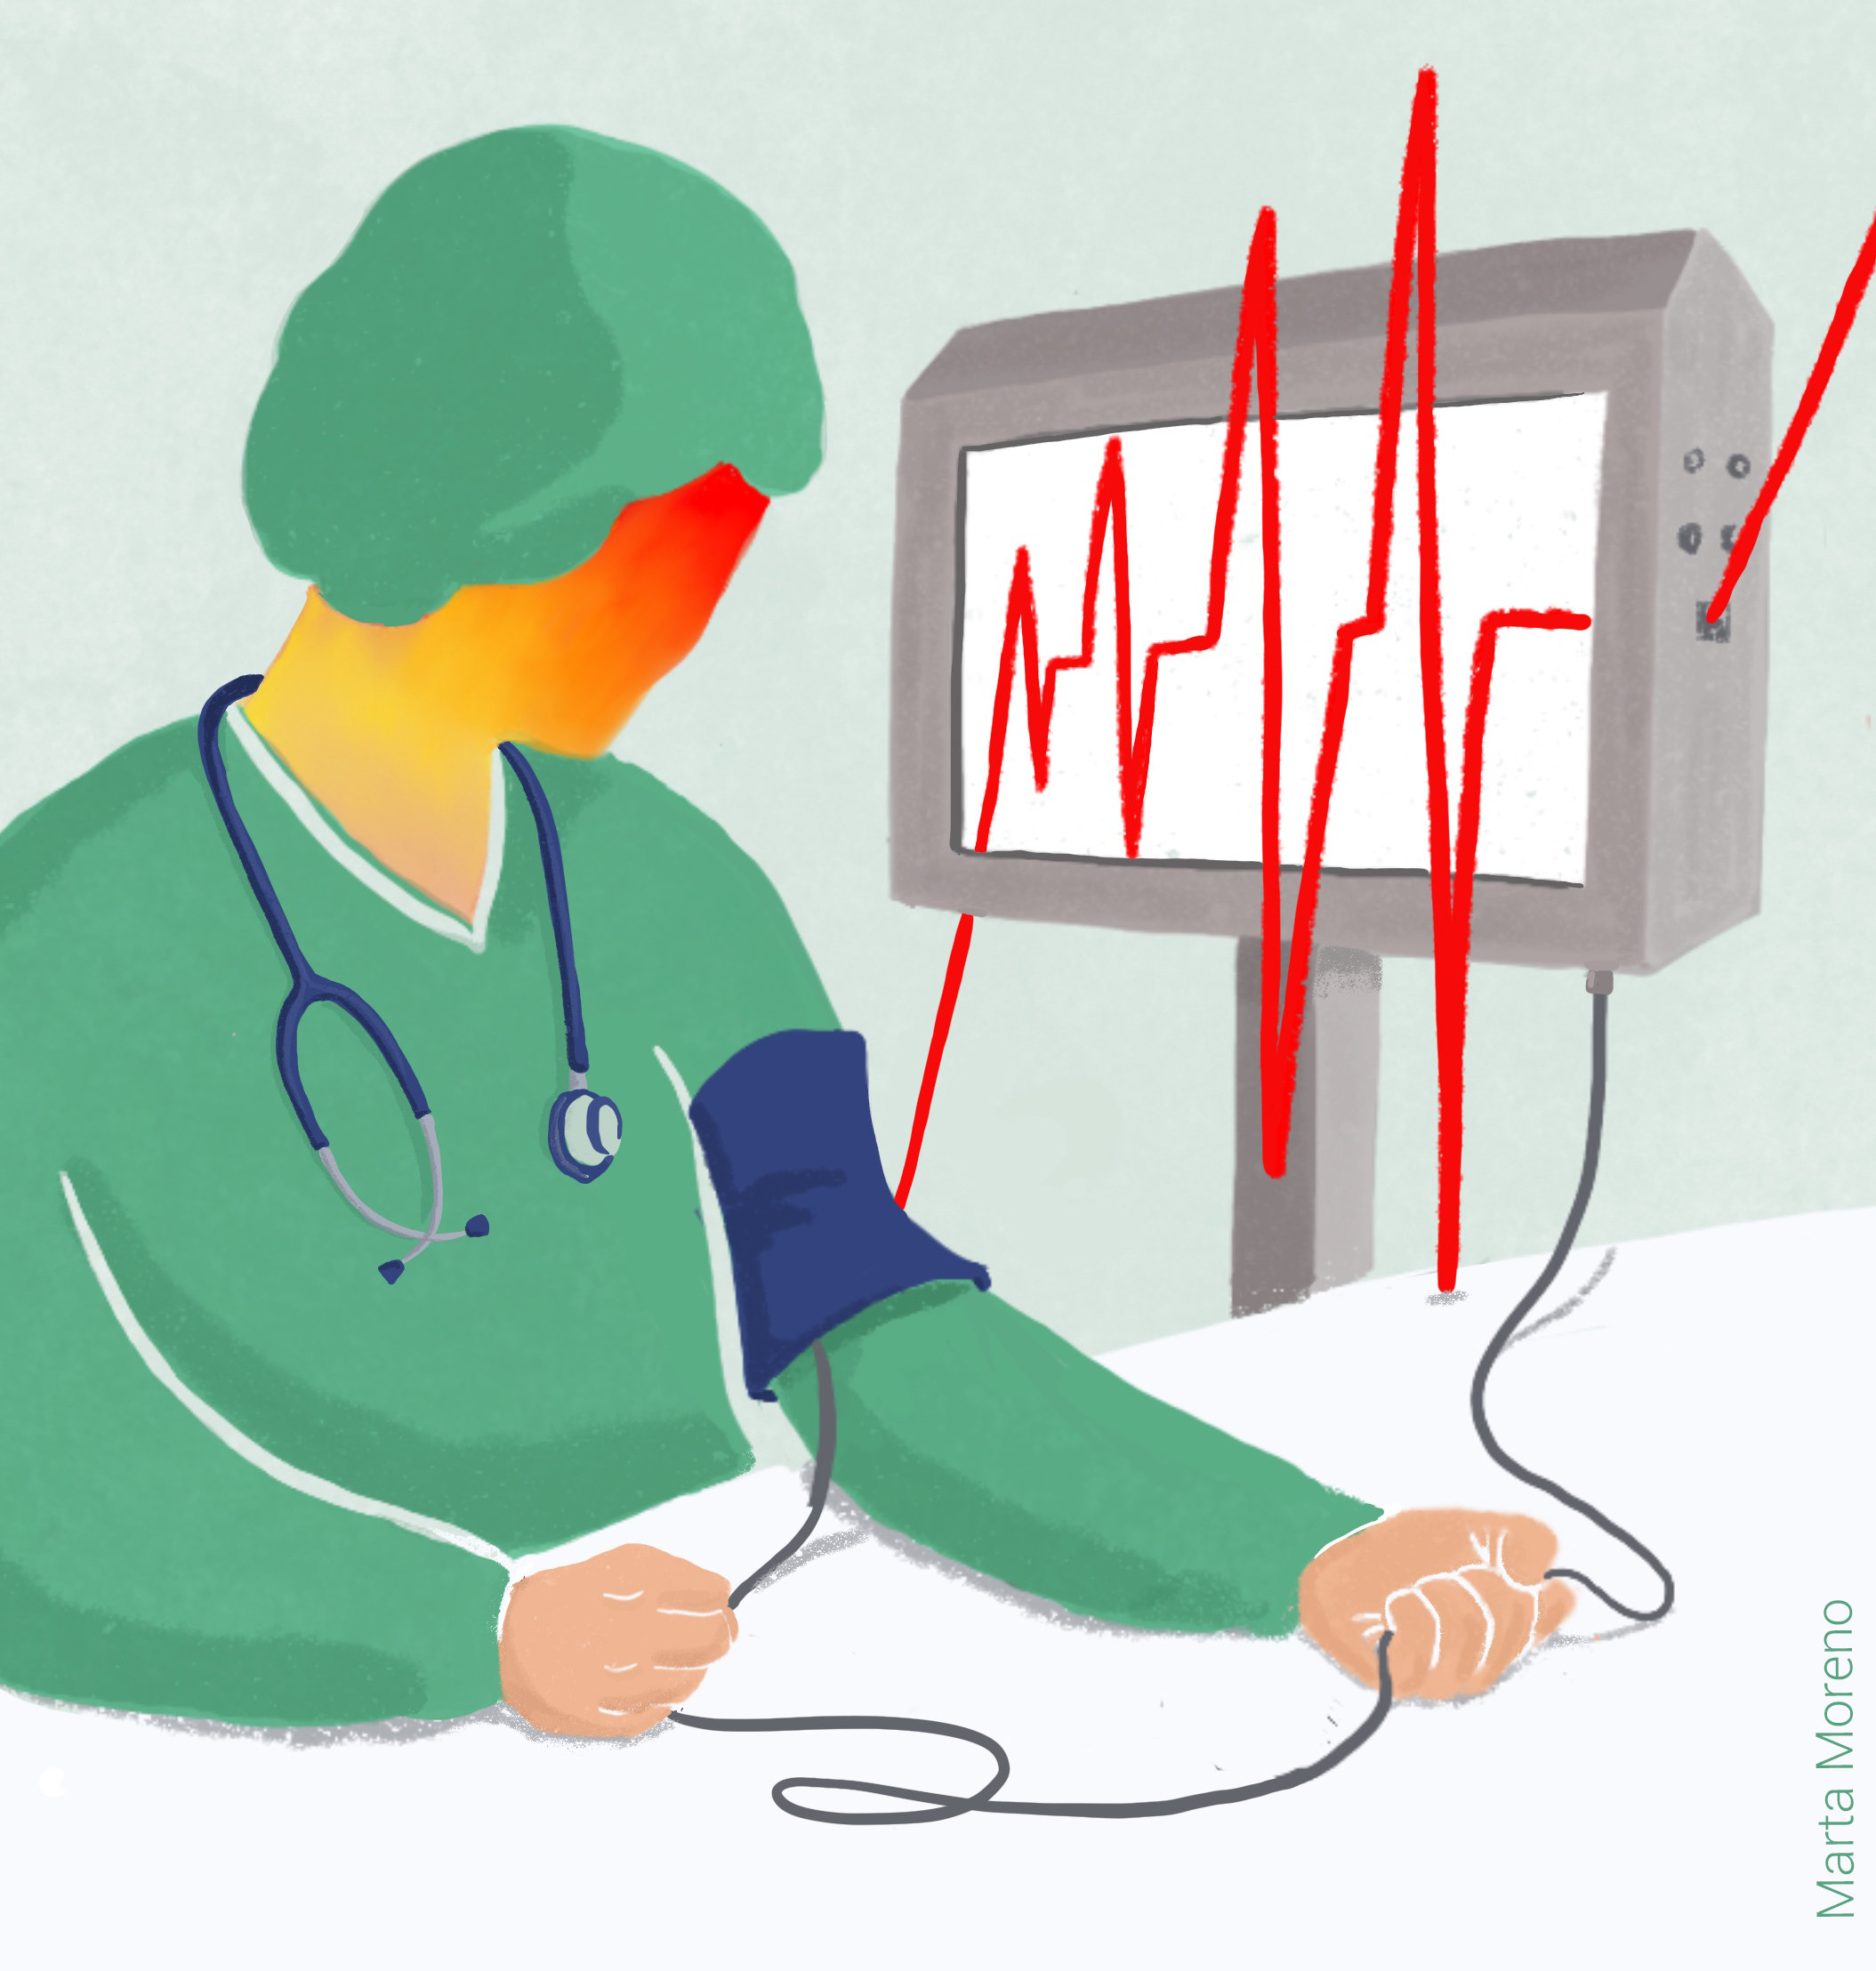 Casi el 40% del personal de enfermería del SAS tiene niveles altos del Síndrome de Burnout